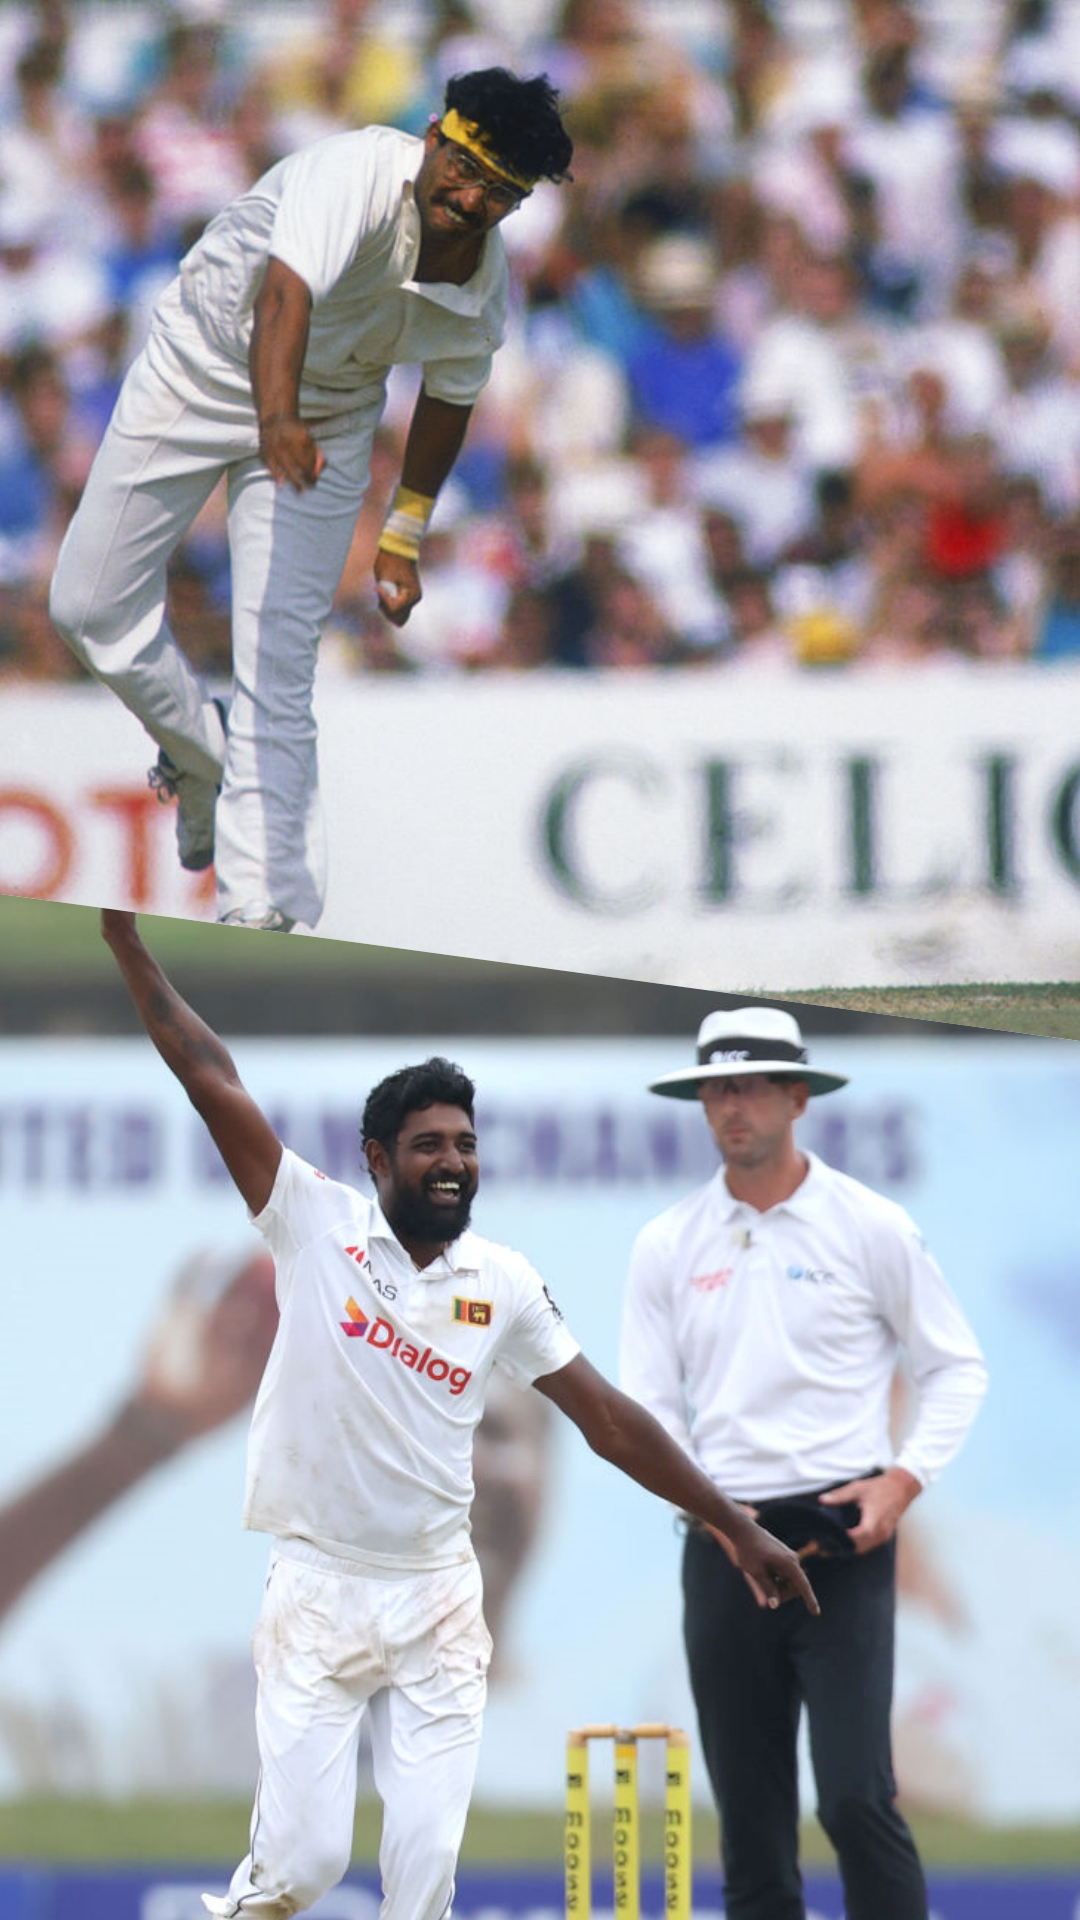 टेस्ट डेब्यू में सर्वाधिक विकेट लेने वाले टॉप 5 खिलाड़ी, भारतीय दिग्गज के नाम वर्ल्ड रिकॉर्ड